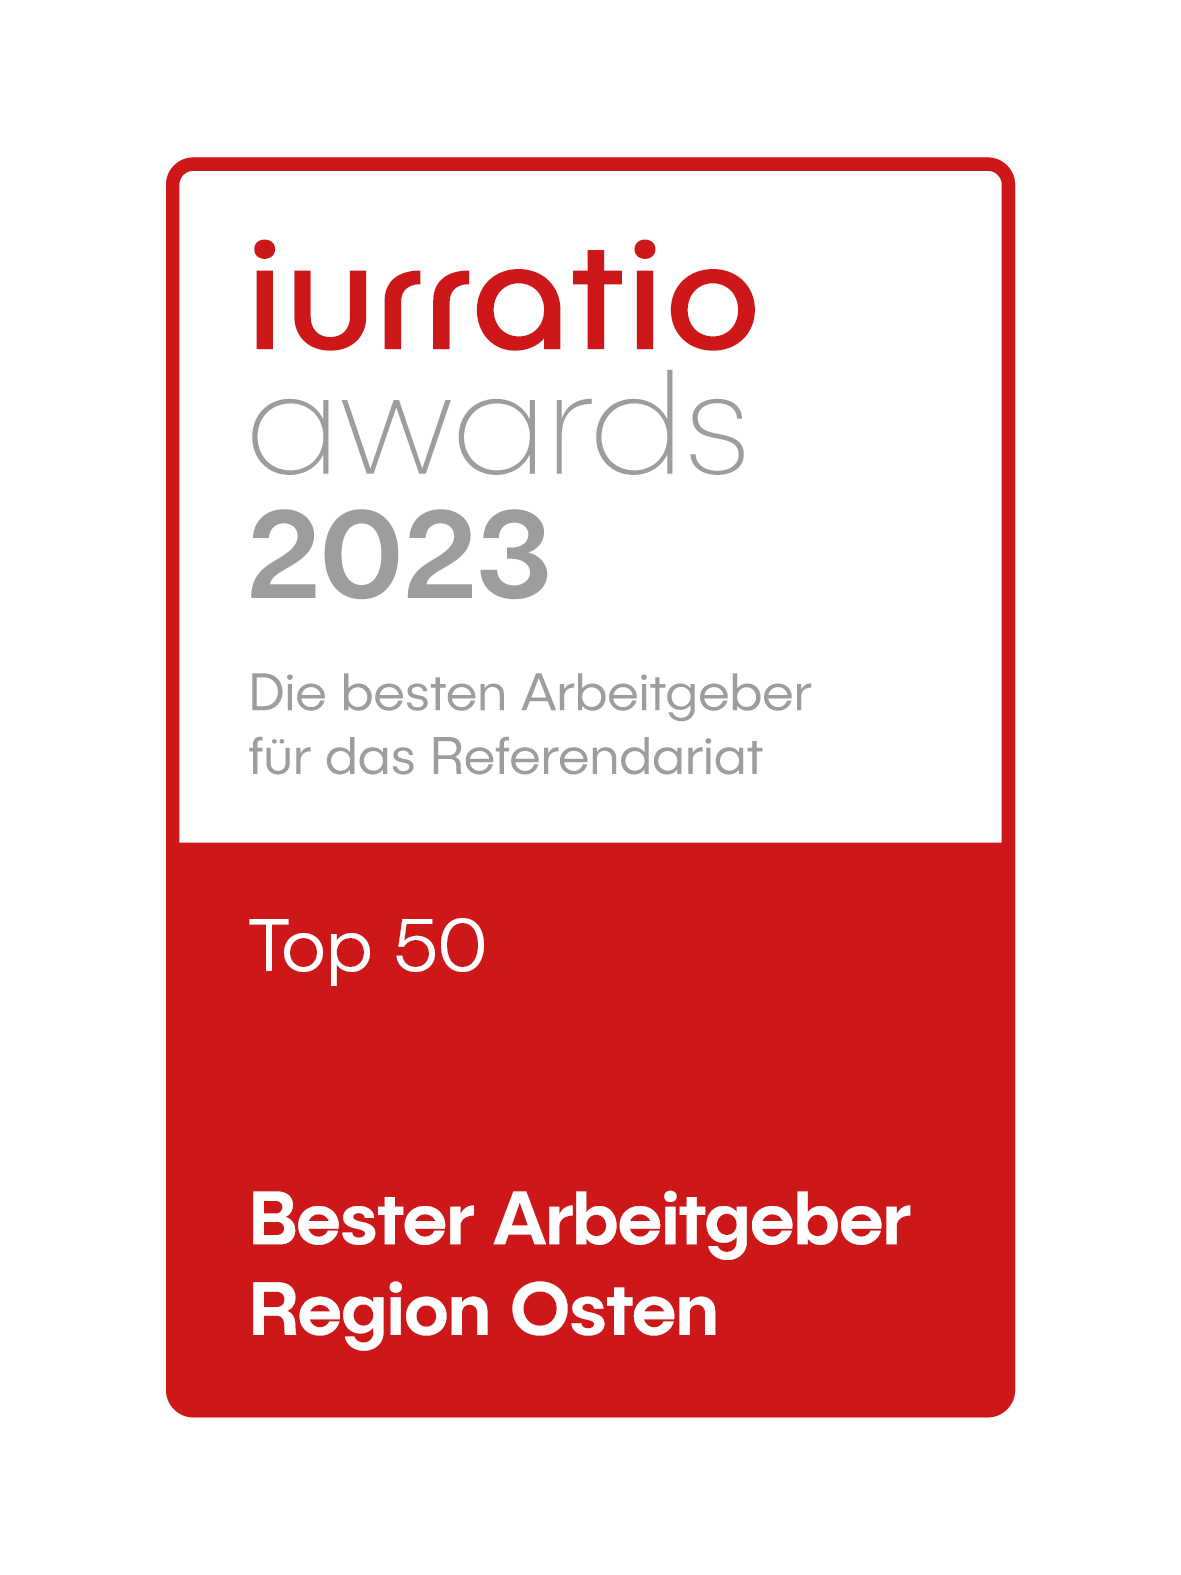 Siegel für Battke Grünberg als Top Arbeitgeber 2023 von iurratio